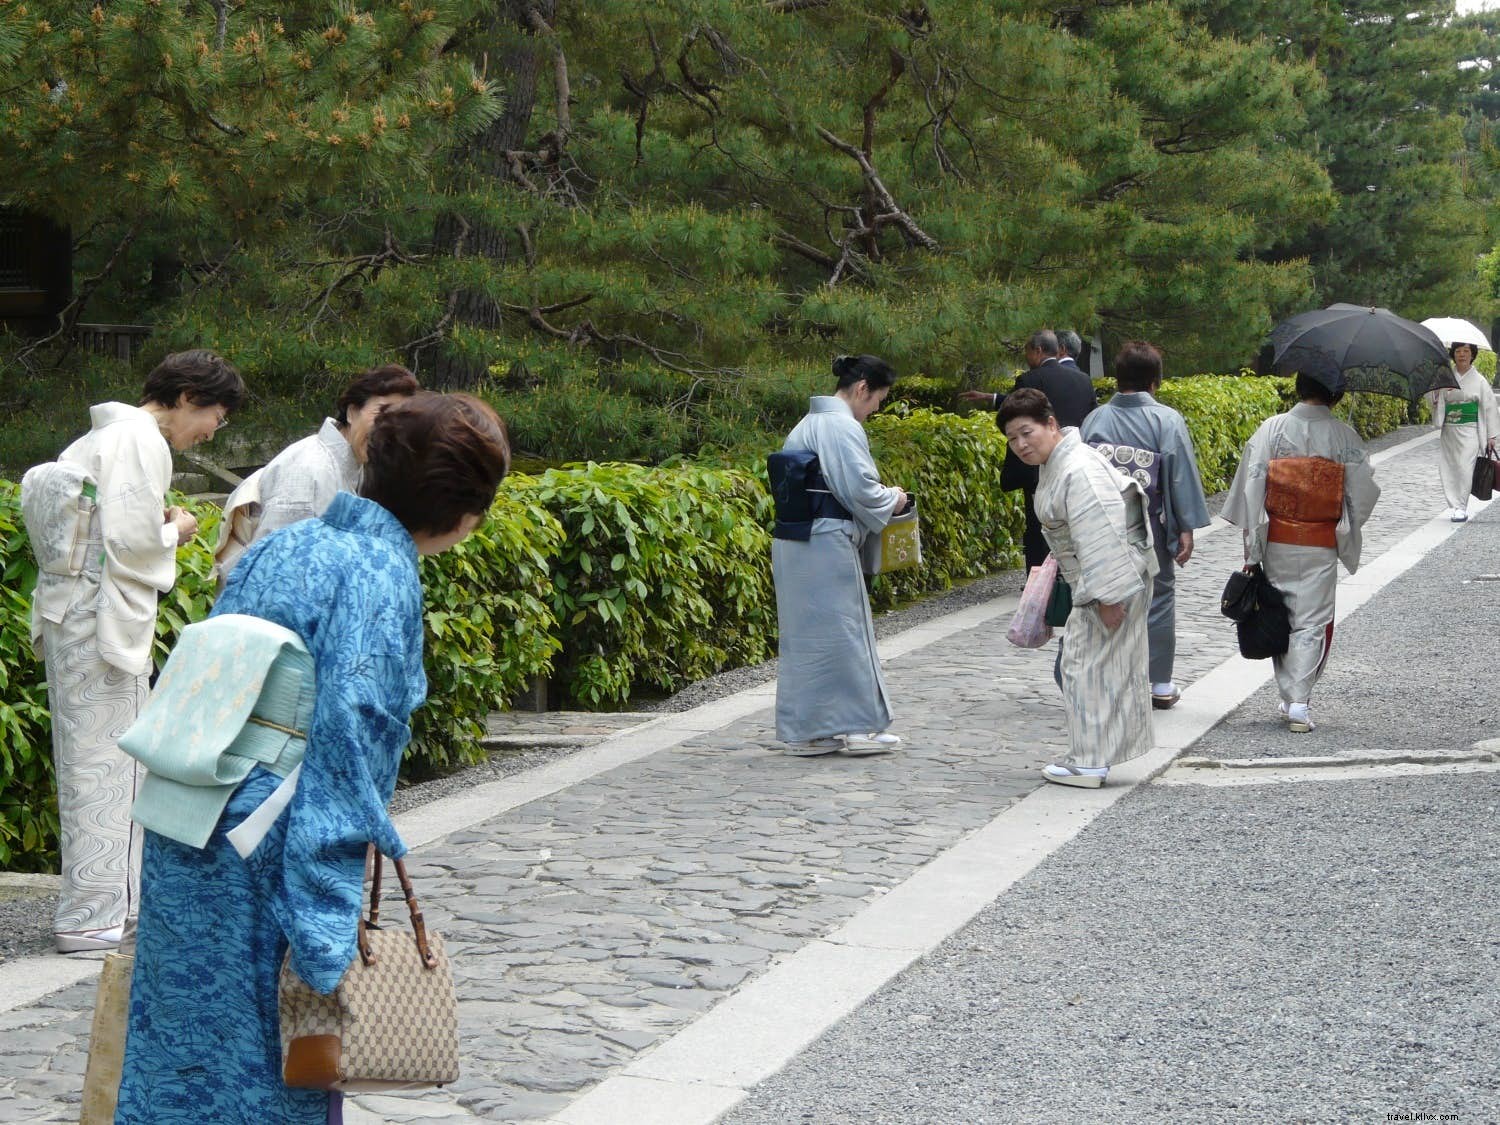 À faire et à ne pas faire au Japon :conseils d étiquette pour les voyageurs novices 